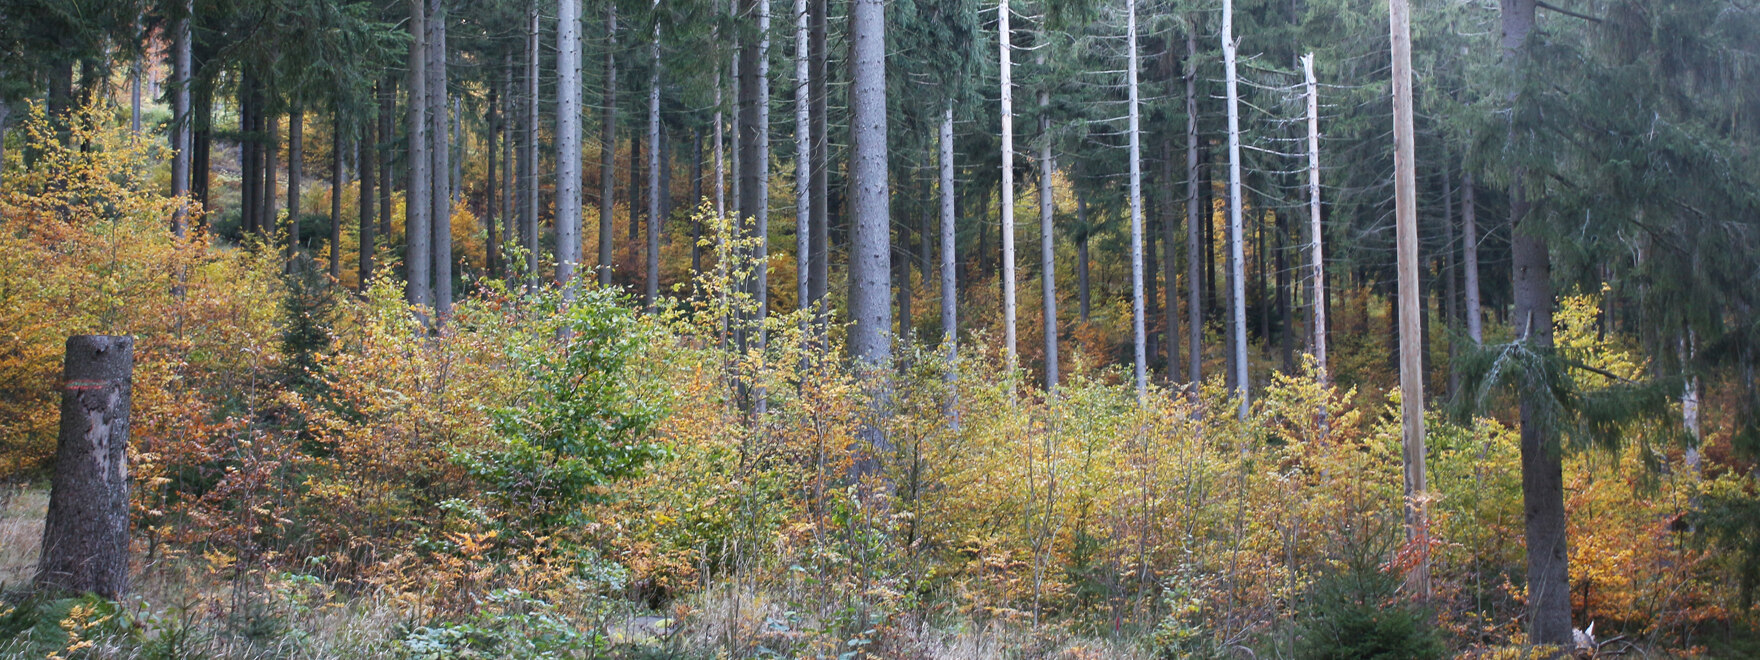 Blick in Fichtenwald mit Laubholz-Unterstand